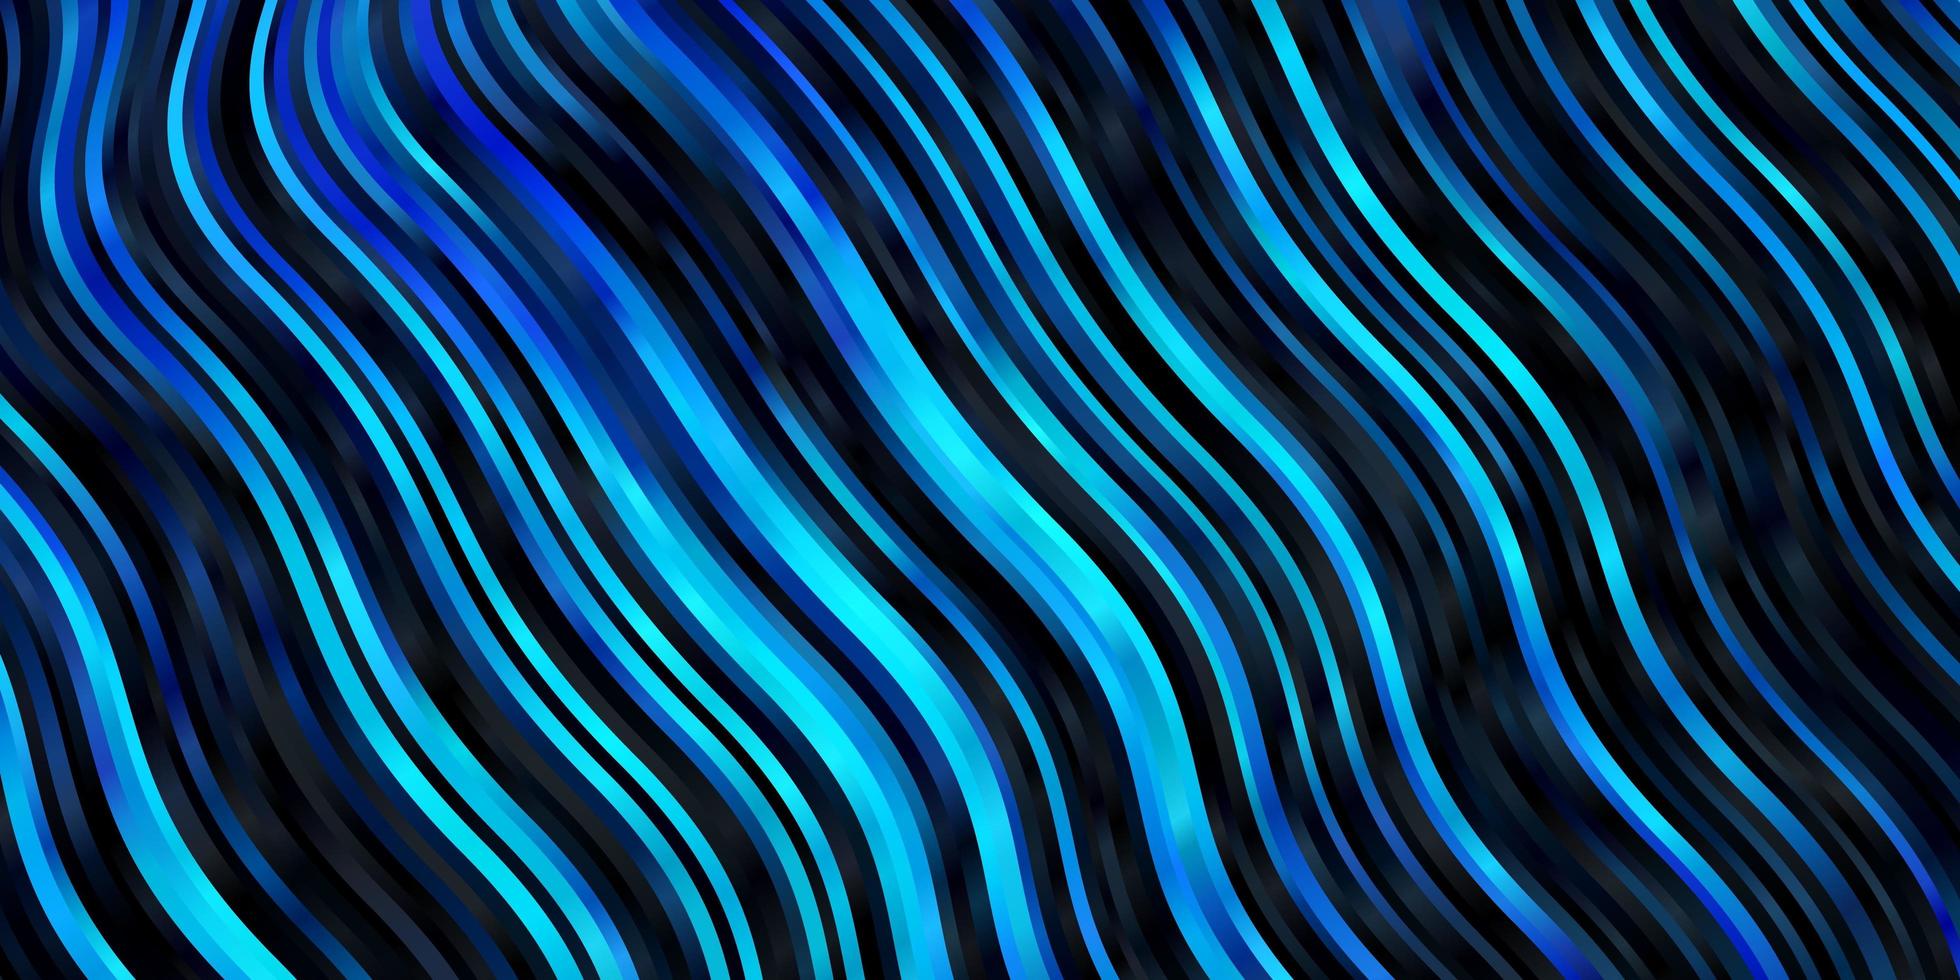 textura vector azul escuro com arco circular.